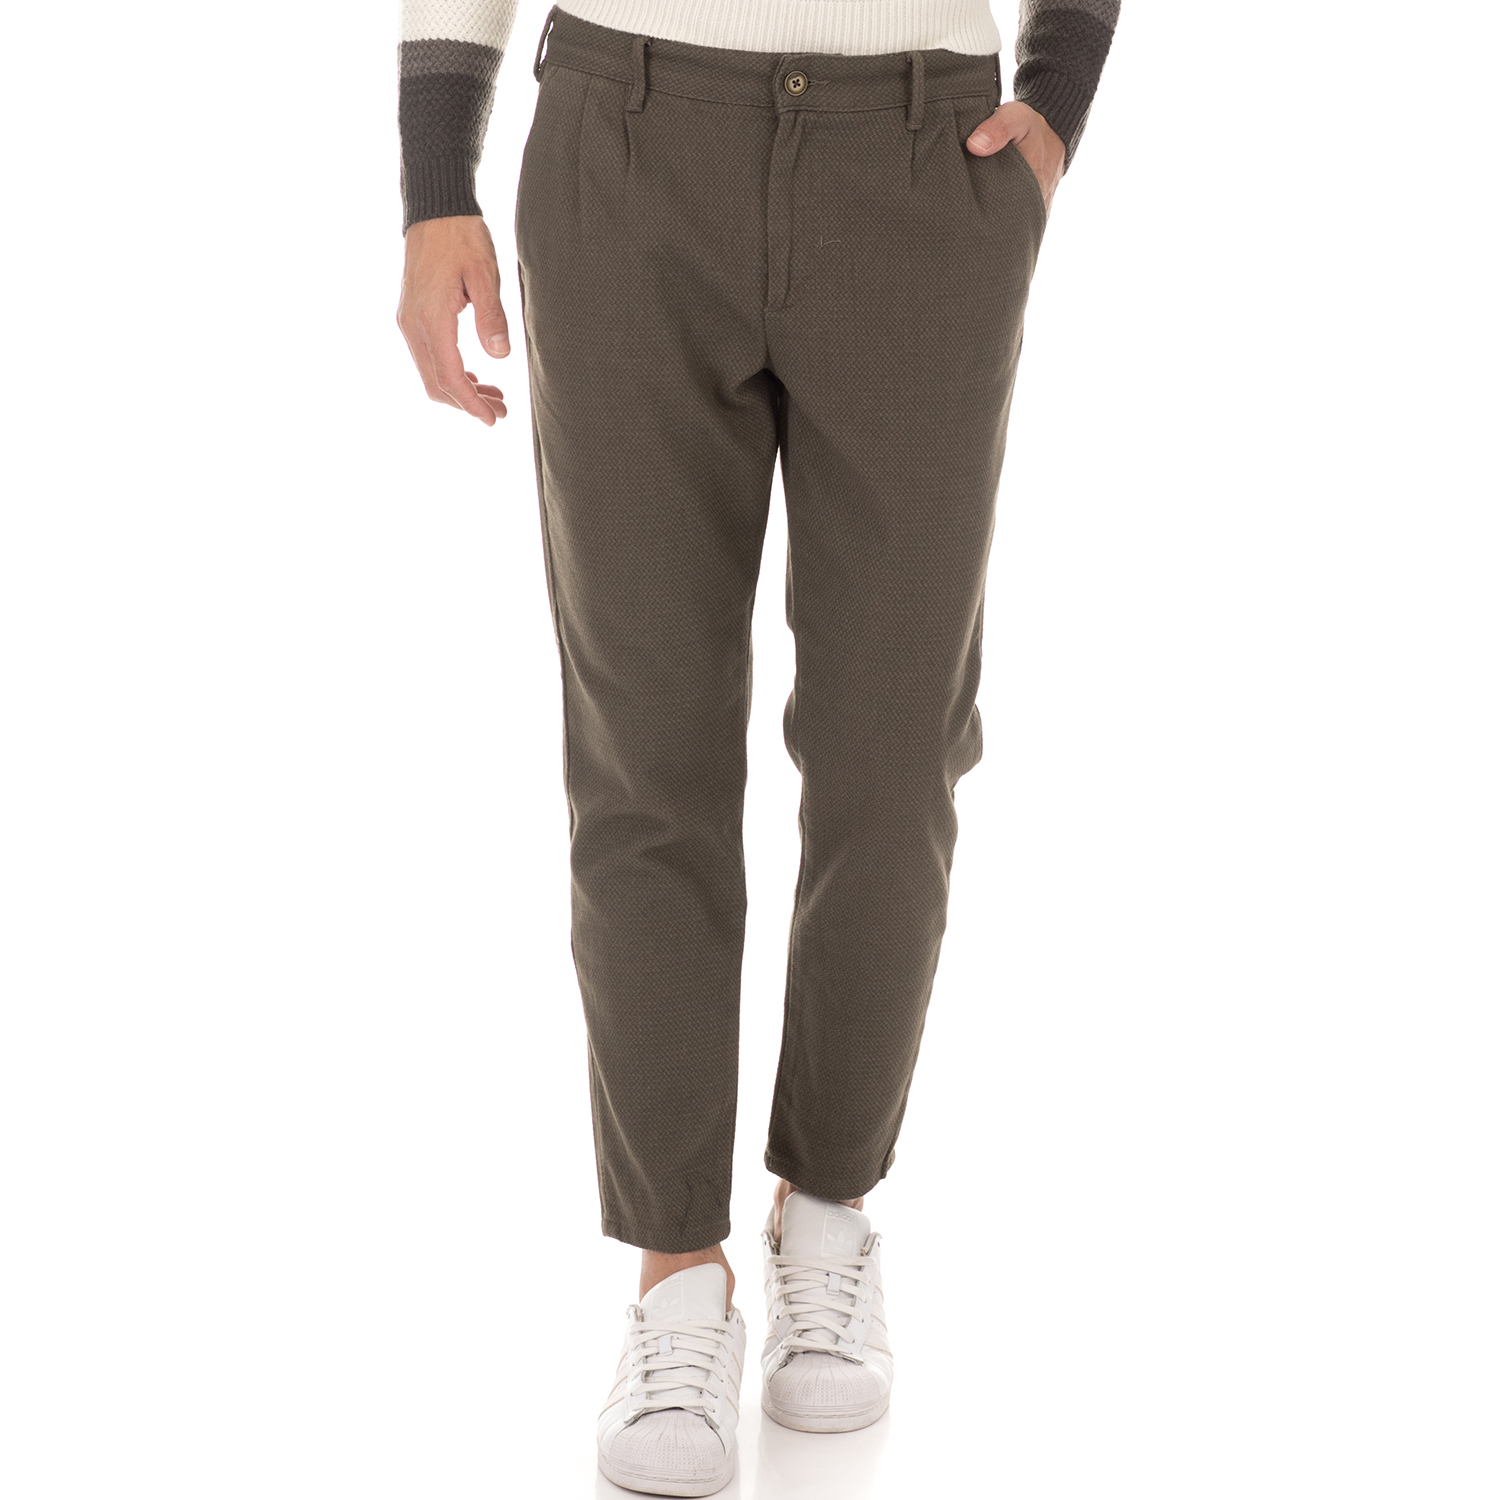 Ανδρικά/Ρούχα/Παντελόνια/Chinos SORBINO - Ανδρικό παντελόνι chino SORBINO TASCA AMERICA πράσινο